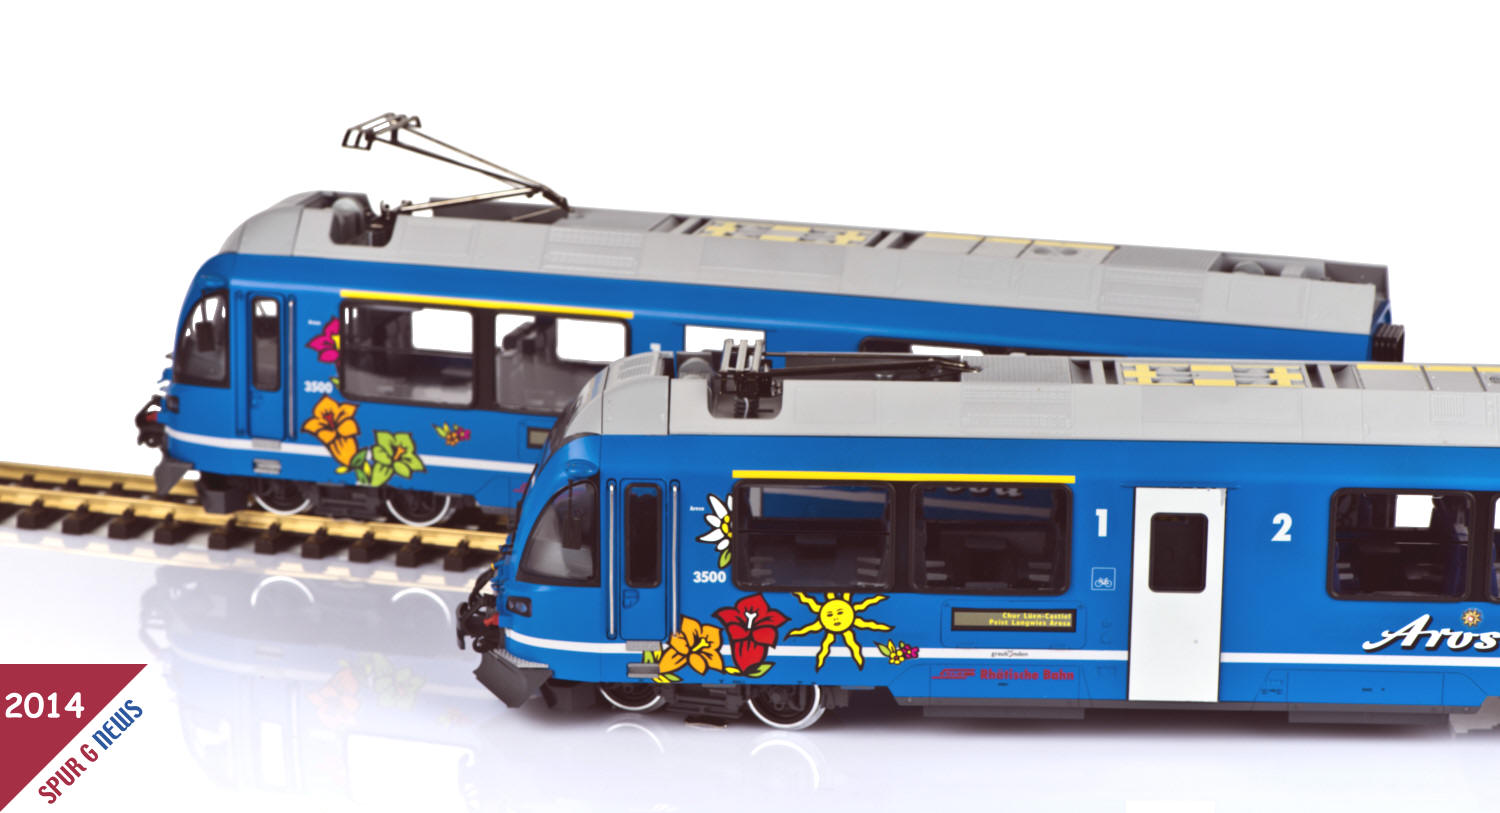 Art. Nr. 21225 - Neuheit von LGB 2015 - Allegra Triebwagen der Linie Chur Arosa in blauer Farbgebung